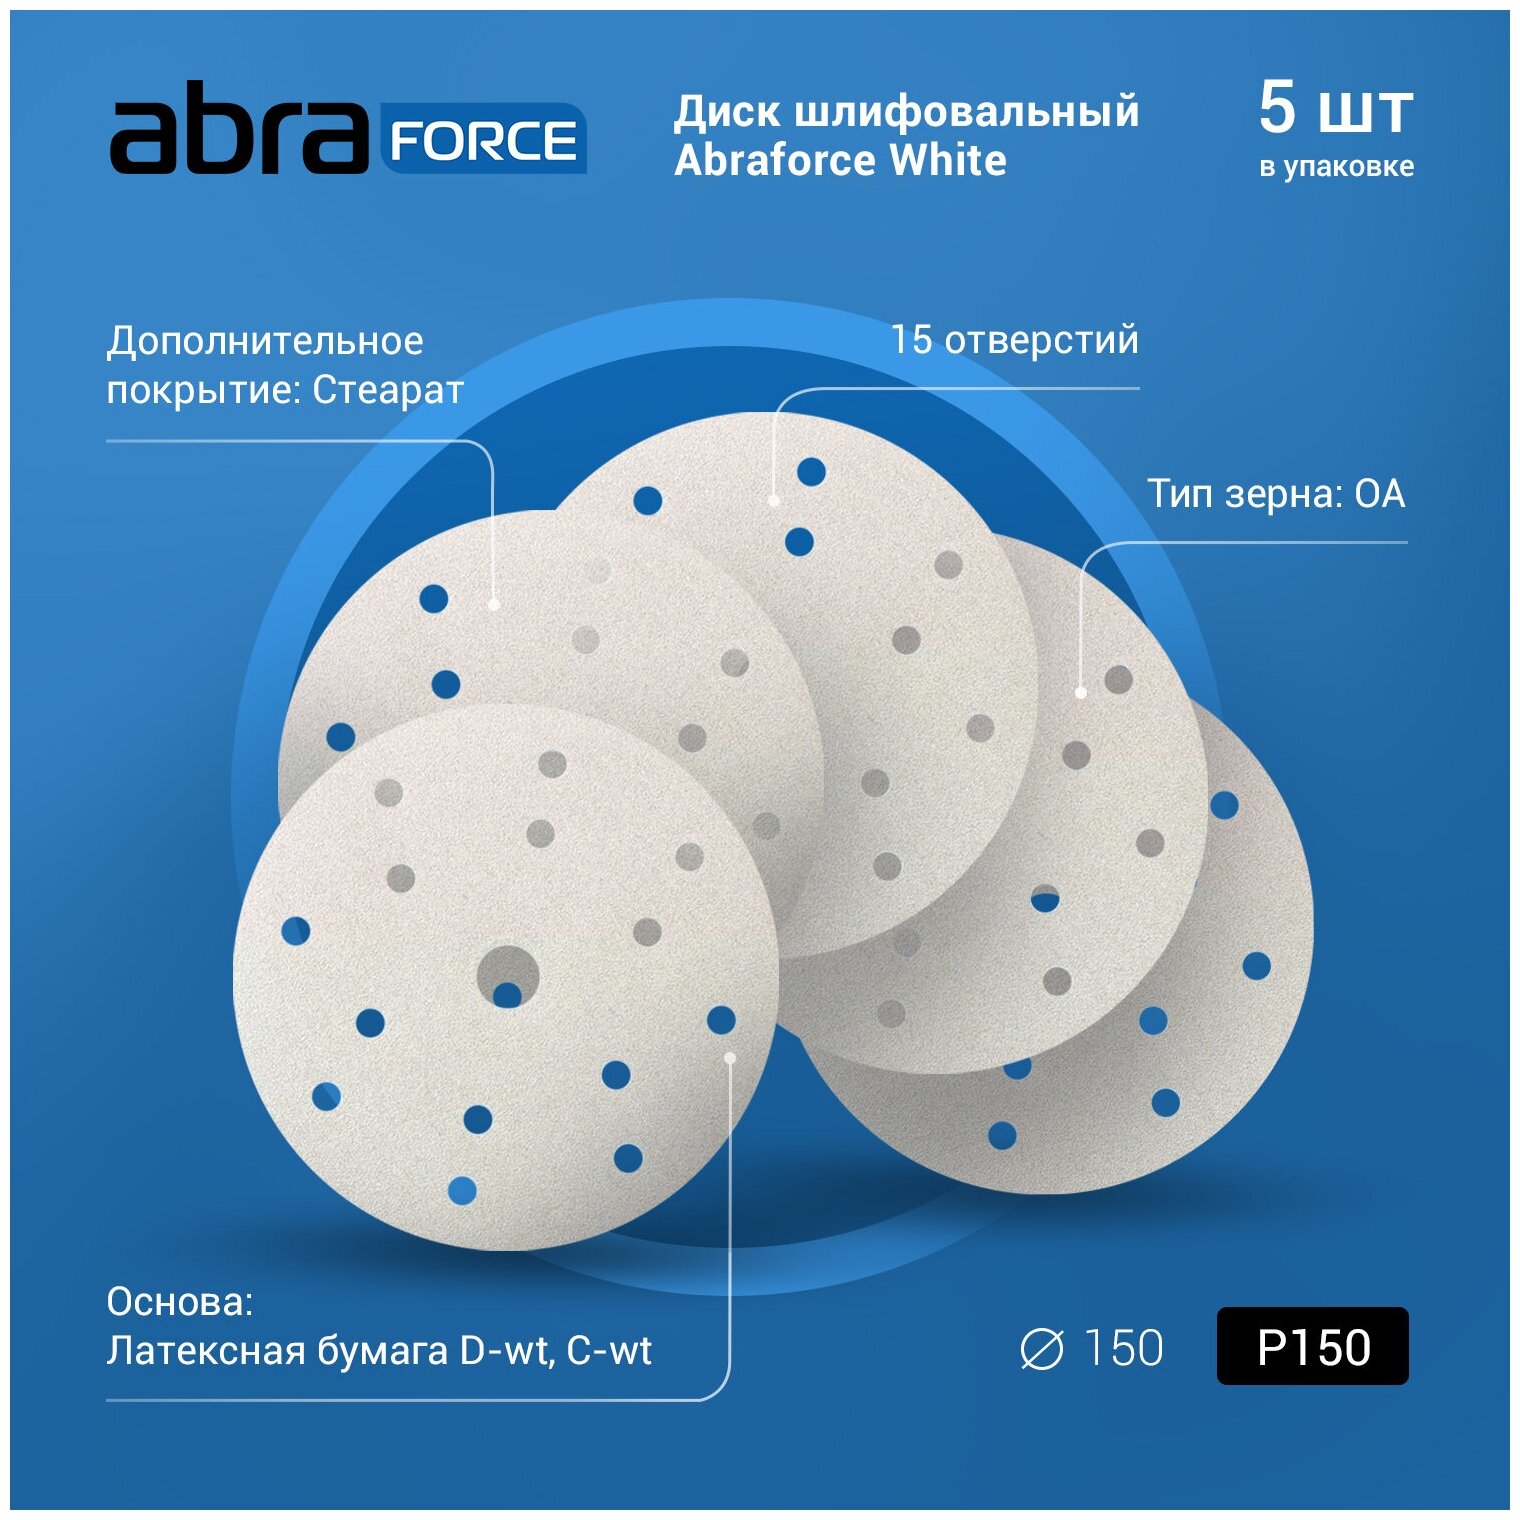 Диск шлифовальный ABRAforce White на бумажной основе 15отверстий диаметр 150мм Р150